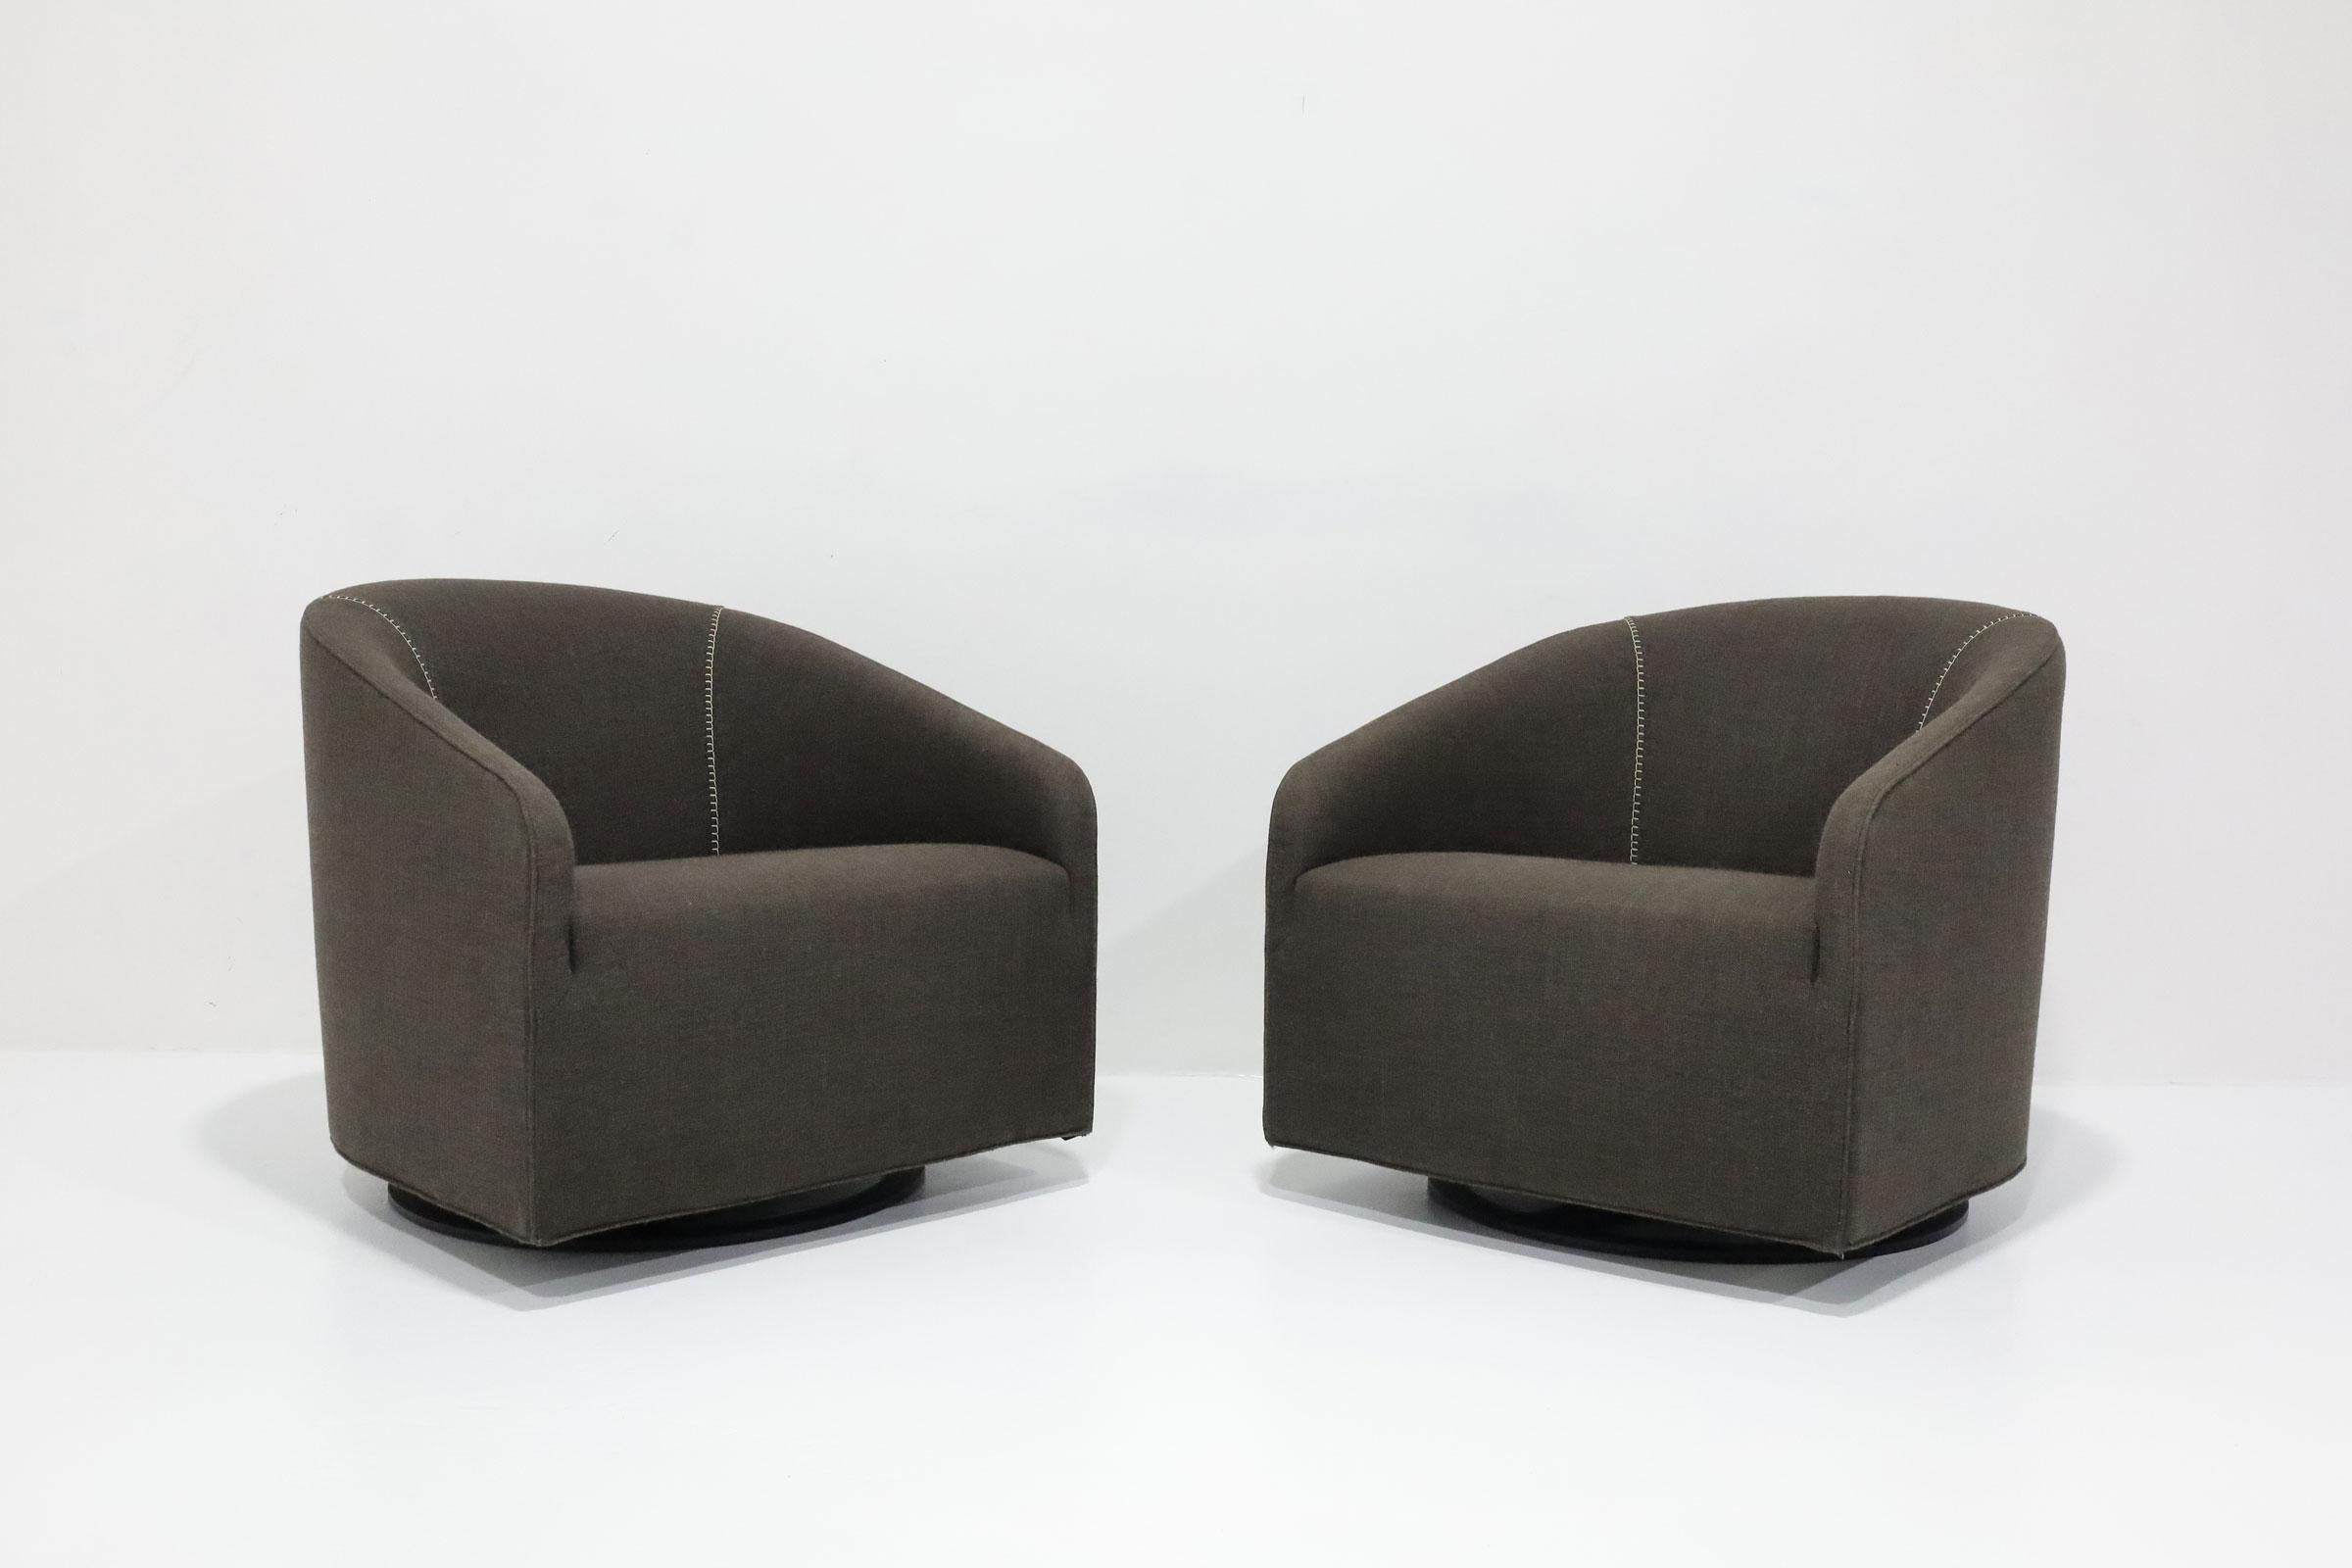 Wie neu, großartig aussehende, drehbare Lounge-Stühle, entworfen von Rudolfo Dordoni für Minotti. 